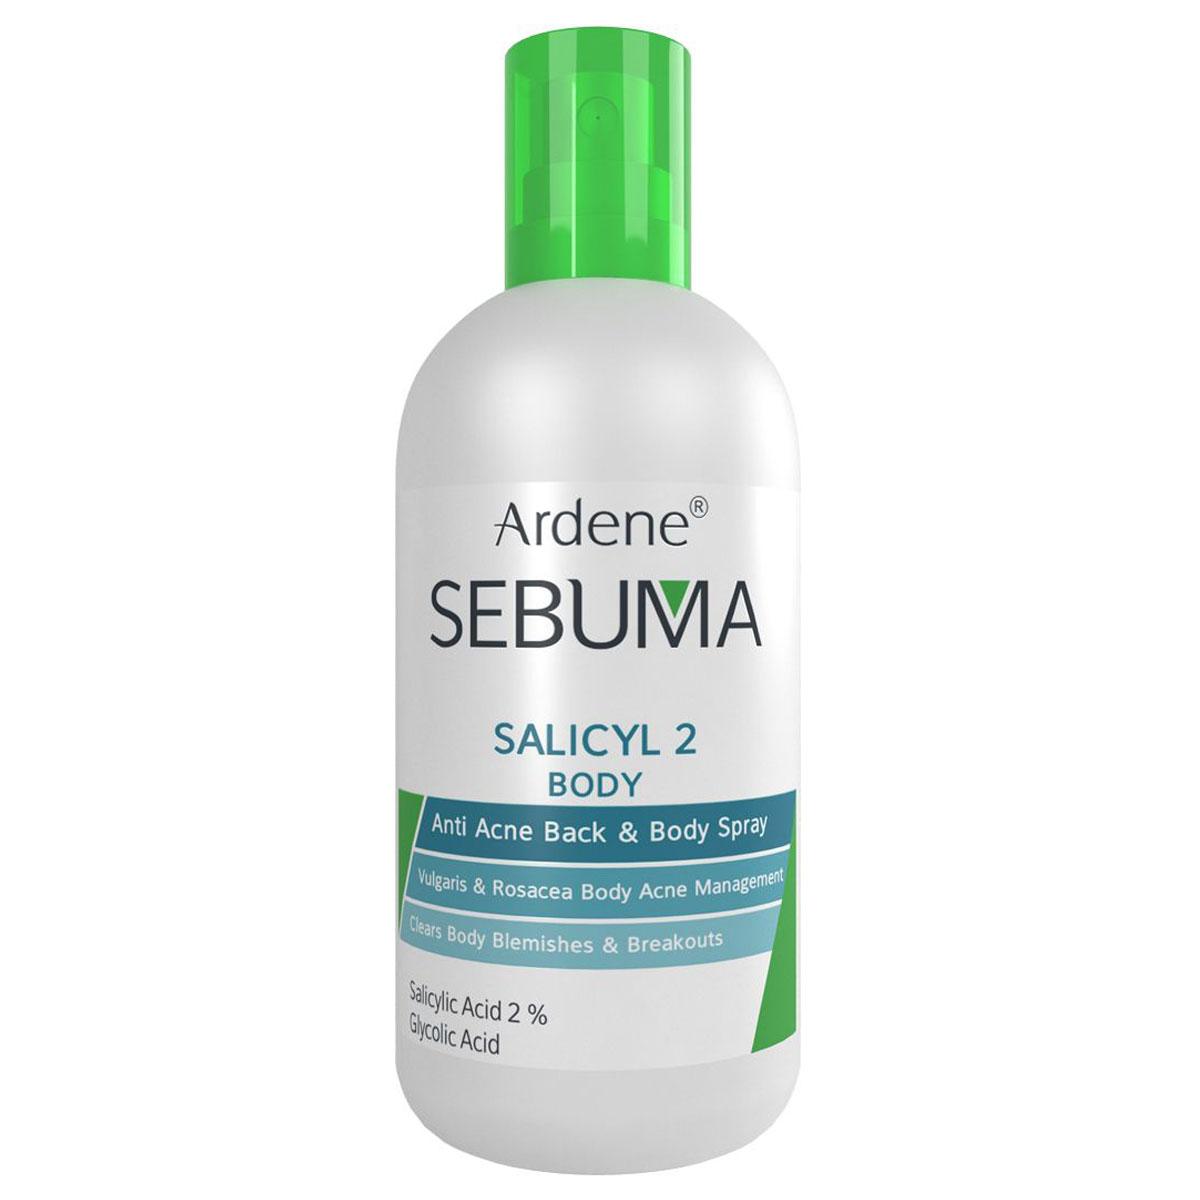 اسپری ضد جوش بدن سبوما - Ardene SEBUMA Salicyl 2 Body Anti Acne Back and Body Spray 250 ml